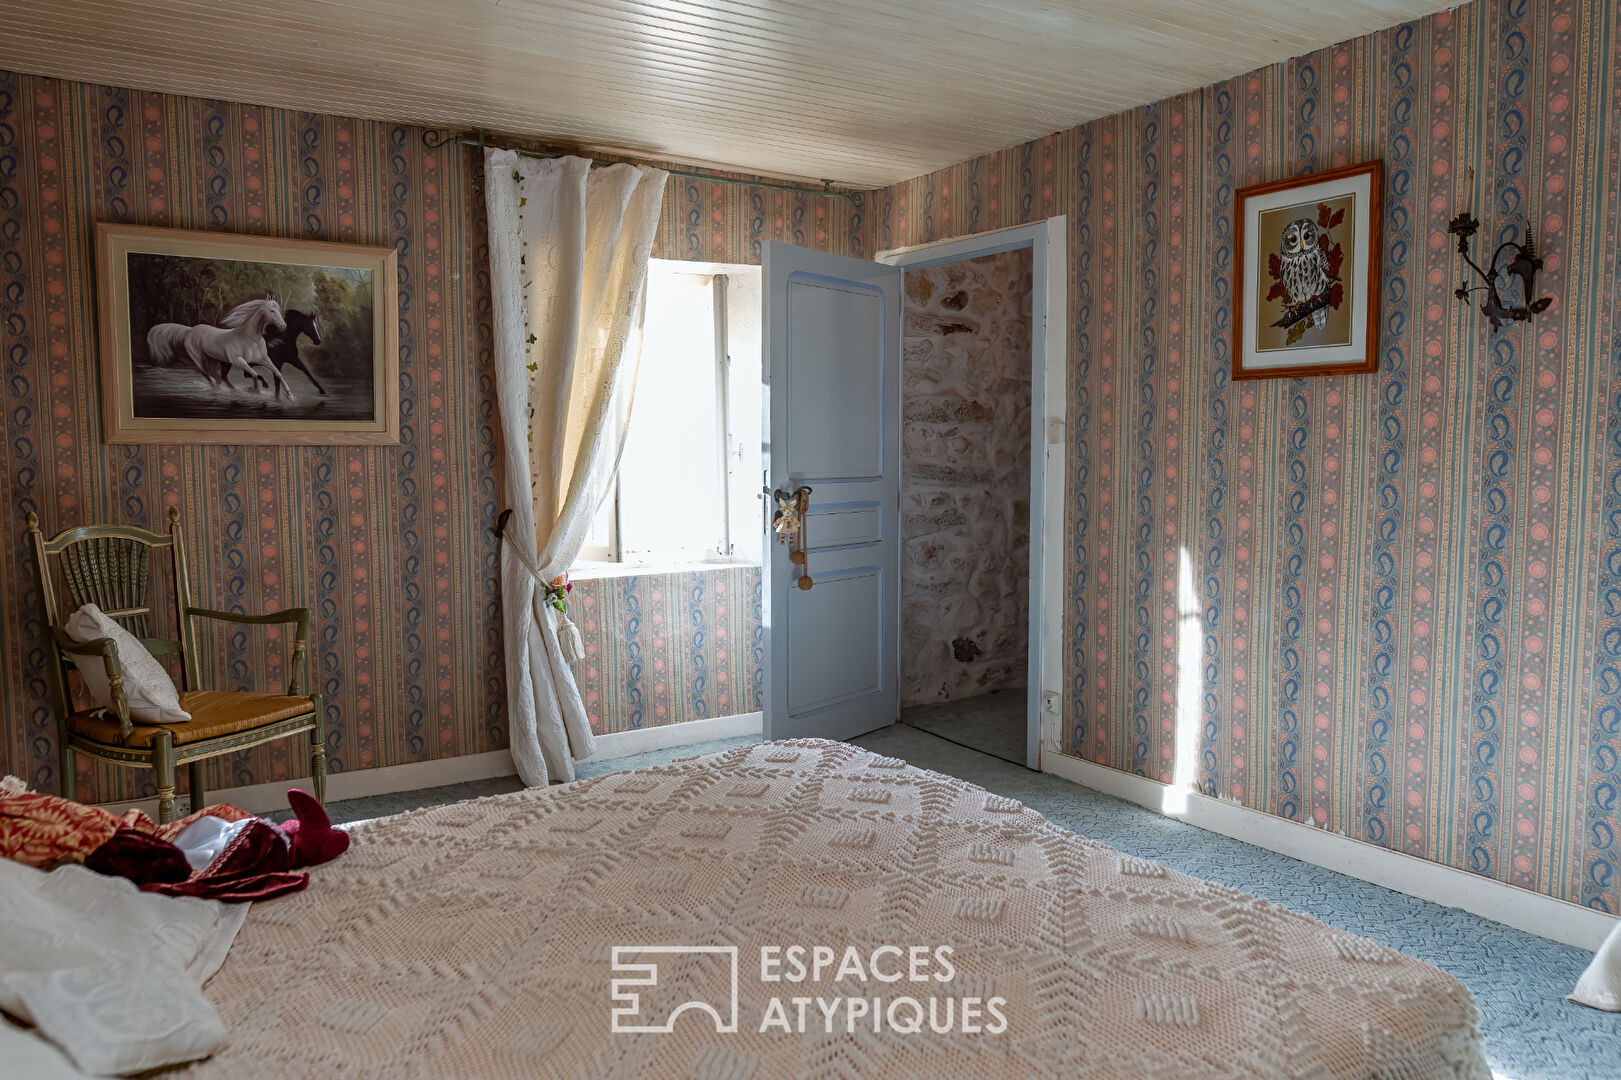 Cette ancienne maison de village de la Drôme a la saveur des souvenirs d’enfance.